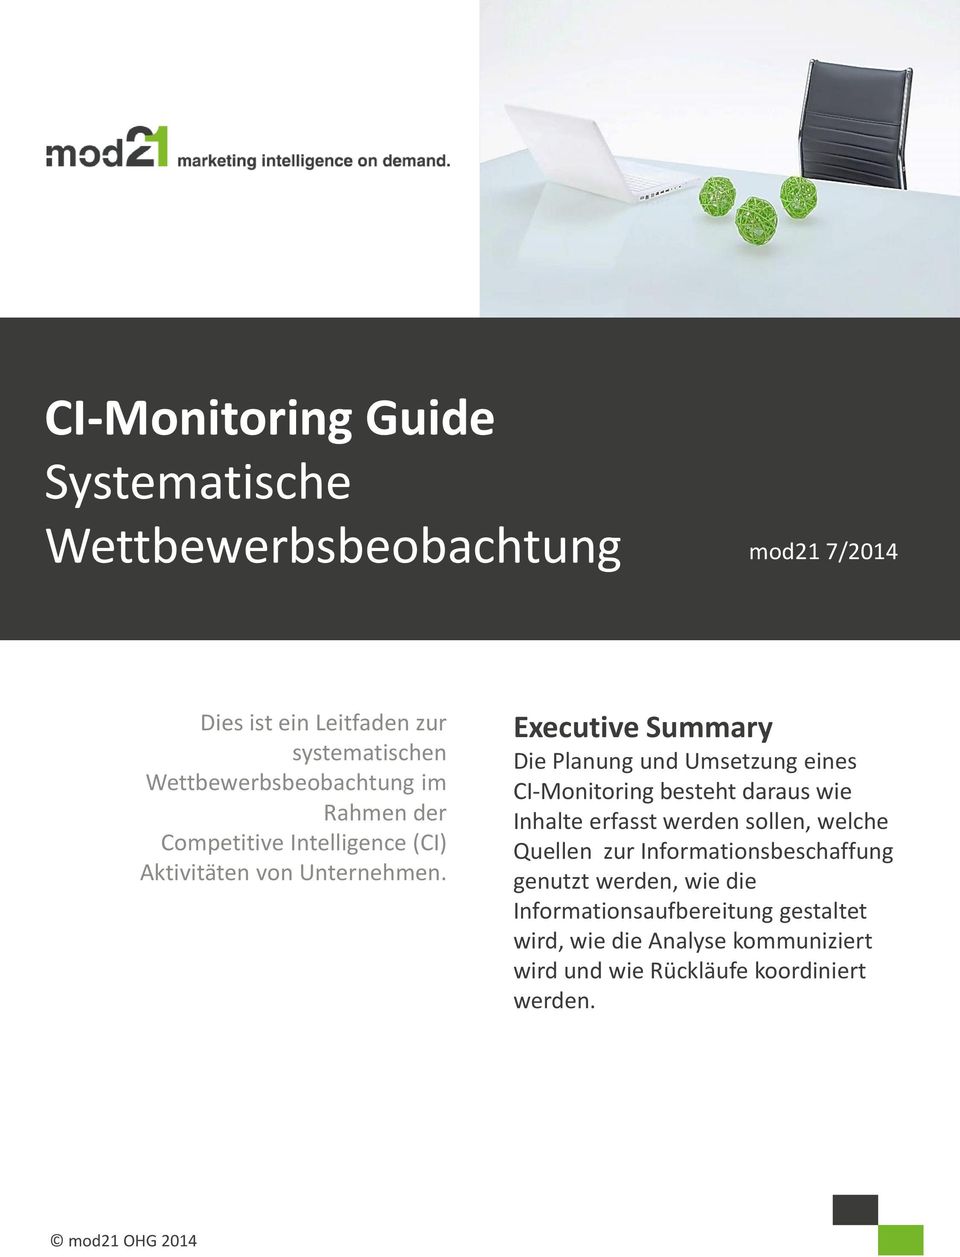 Executive Summary Die Planung und Umsetzung eines CI-Monitoring besteht daraus wie Inhalte erfasst werden sollen, welche